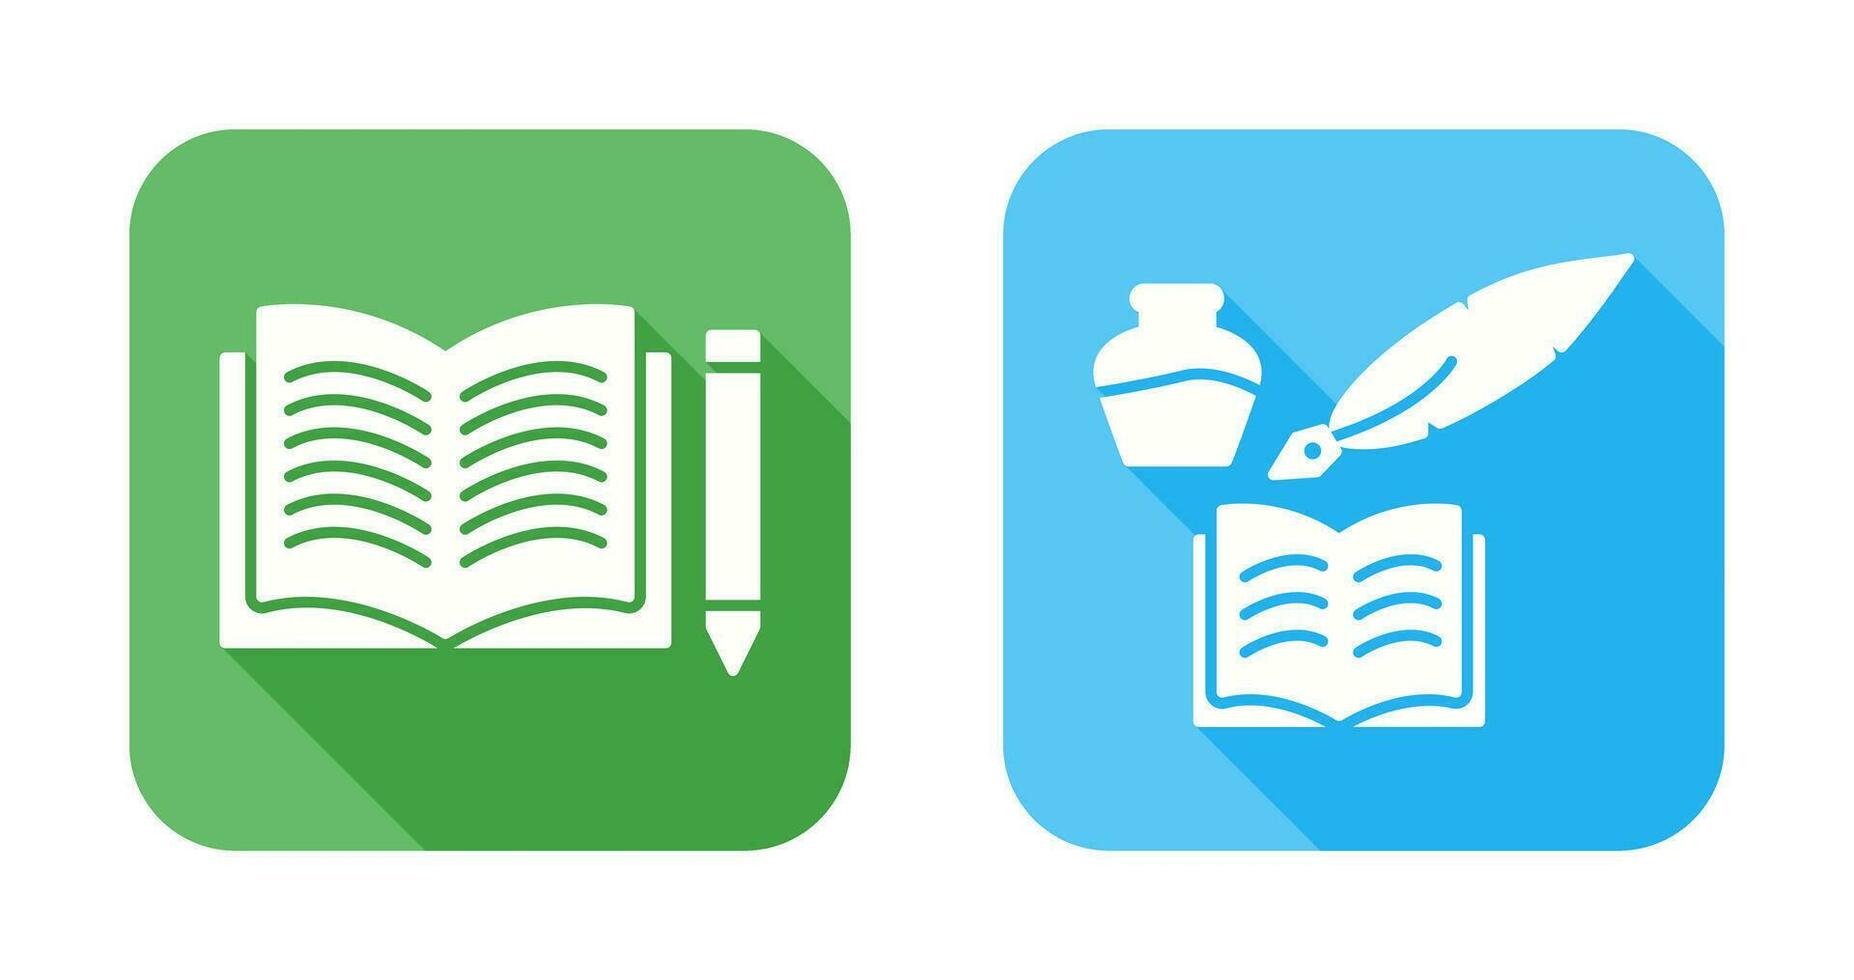 lápiz y libro y quiland libro icono vector